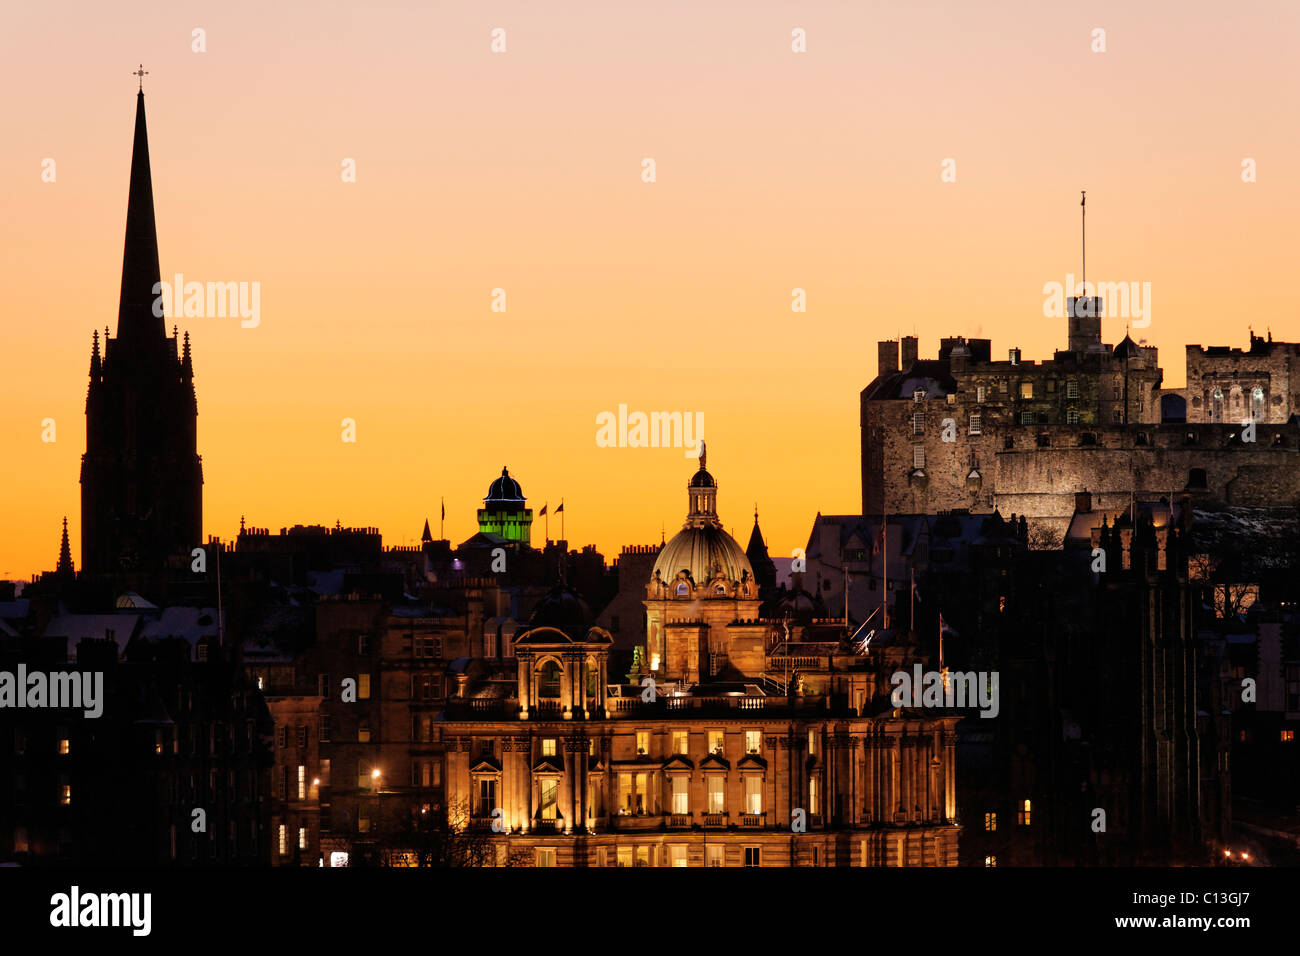 El Castillo de Edimburgo y el Bank of Scotland HQ, Edimburgo, Escocia, Reino Unido. Foto de stock